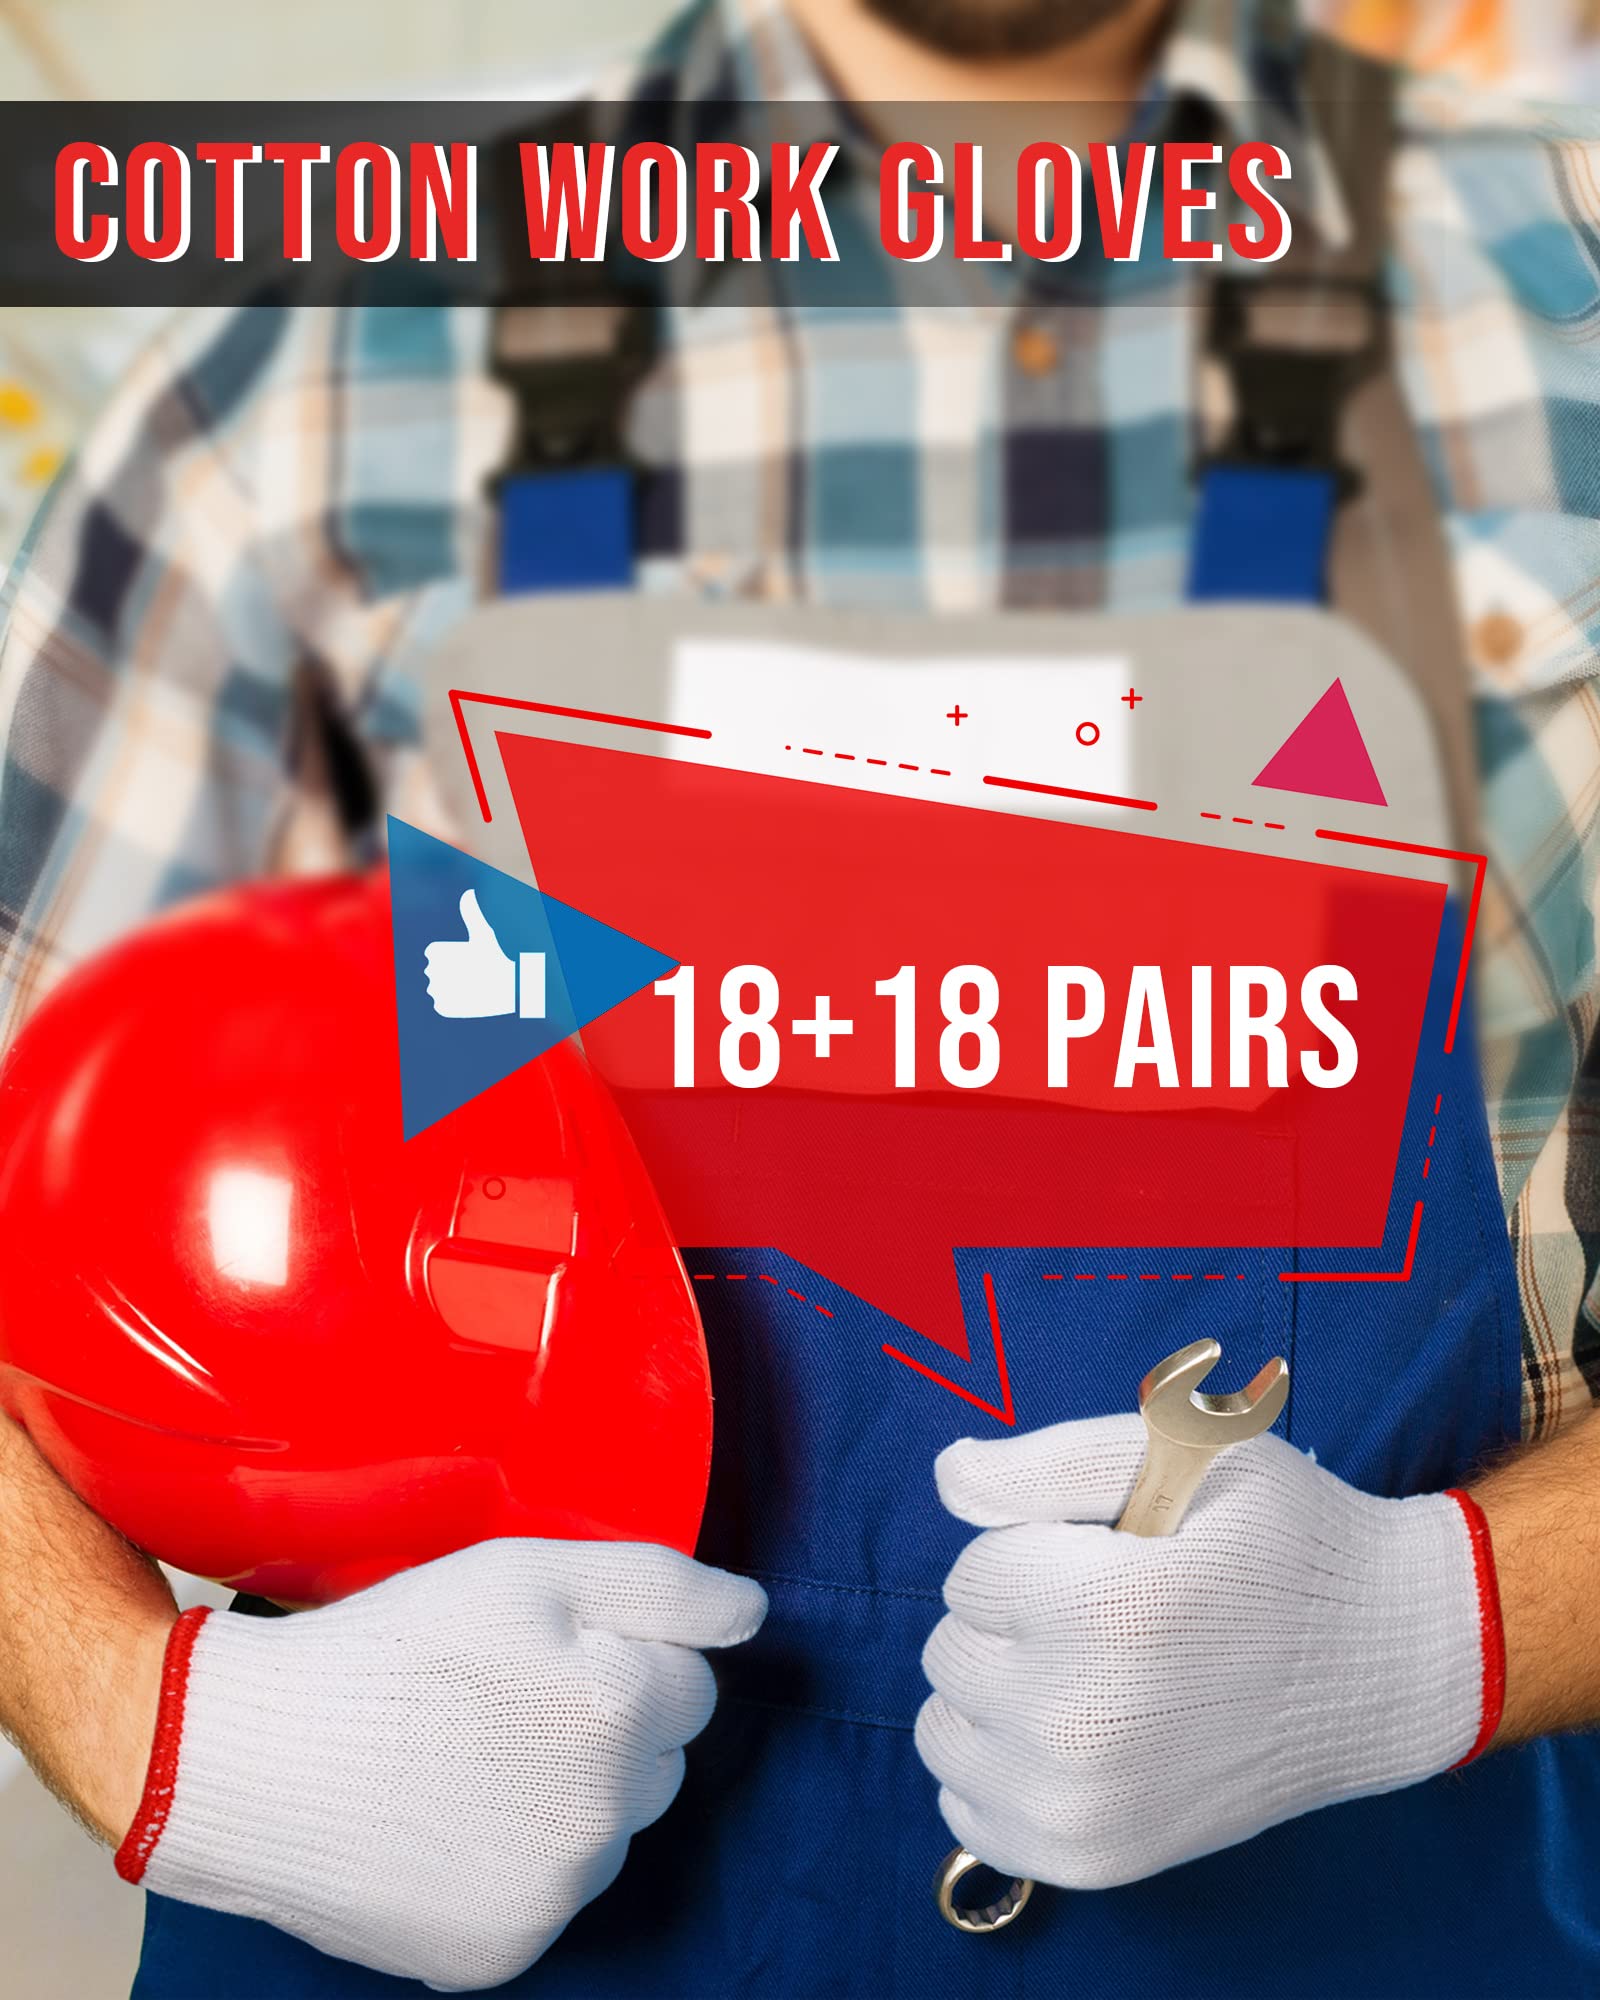 SATINIOR 36 Pairs Hand Work Gloves White Cotton Liners Gloves Safety Work Gloves Liners Men Women Cotton BBQ Gloves (Red Edging), One Size